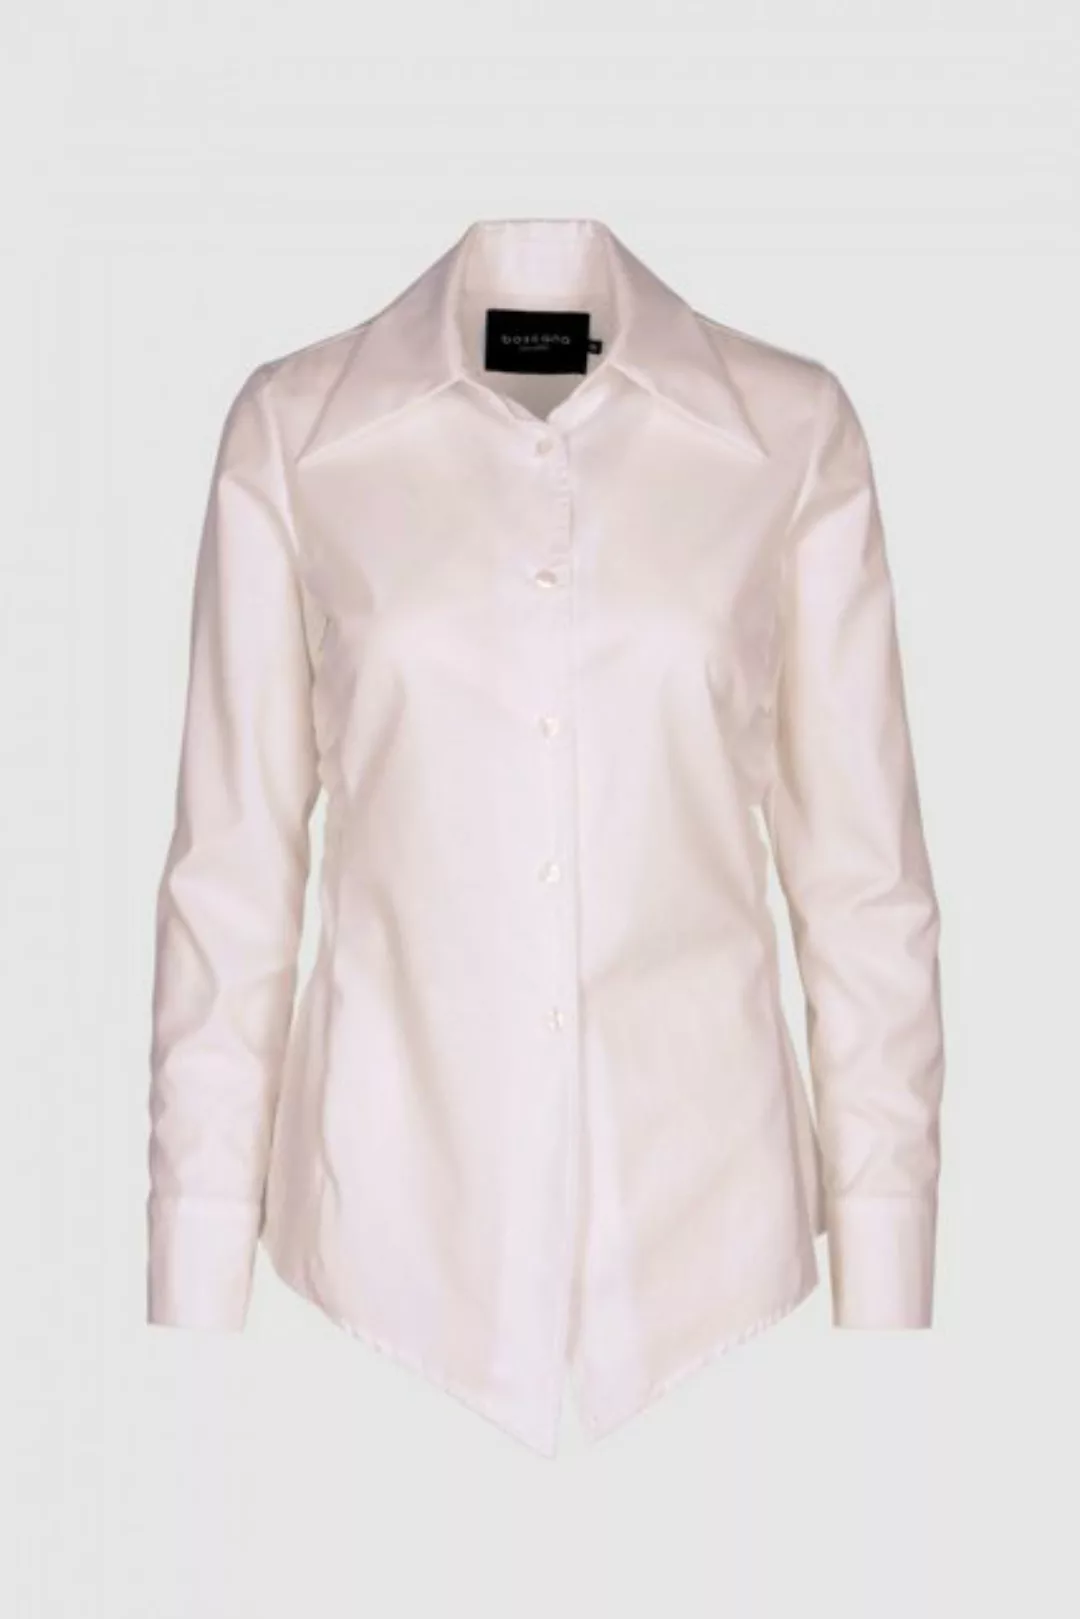 Boscana Hemdbluse Bluse aus Baumwolle in Grau Melange, Rosa, Weiß günstig online kaufen